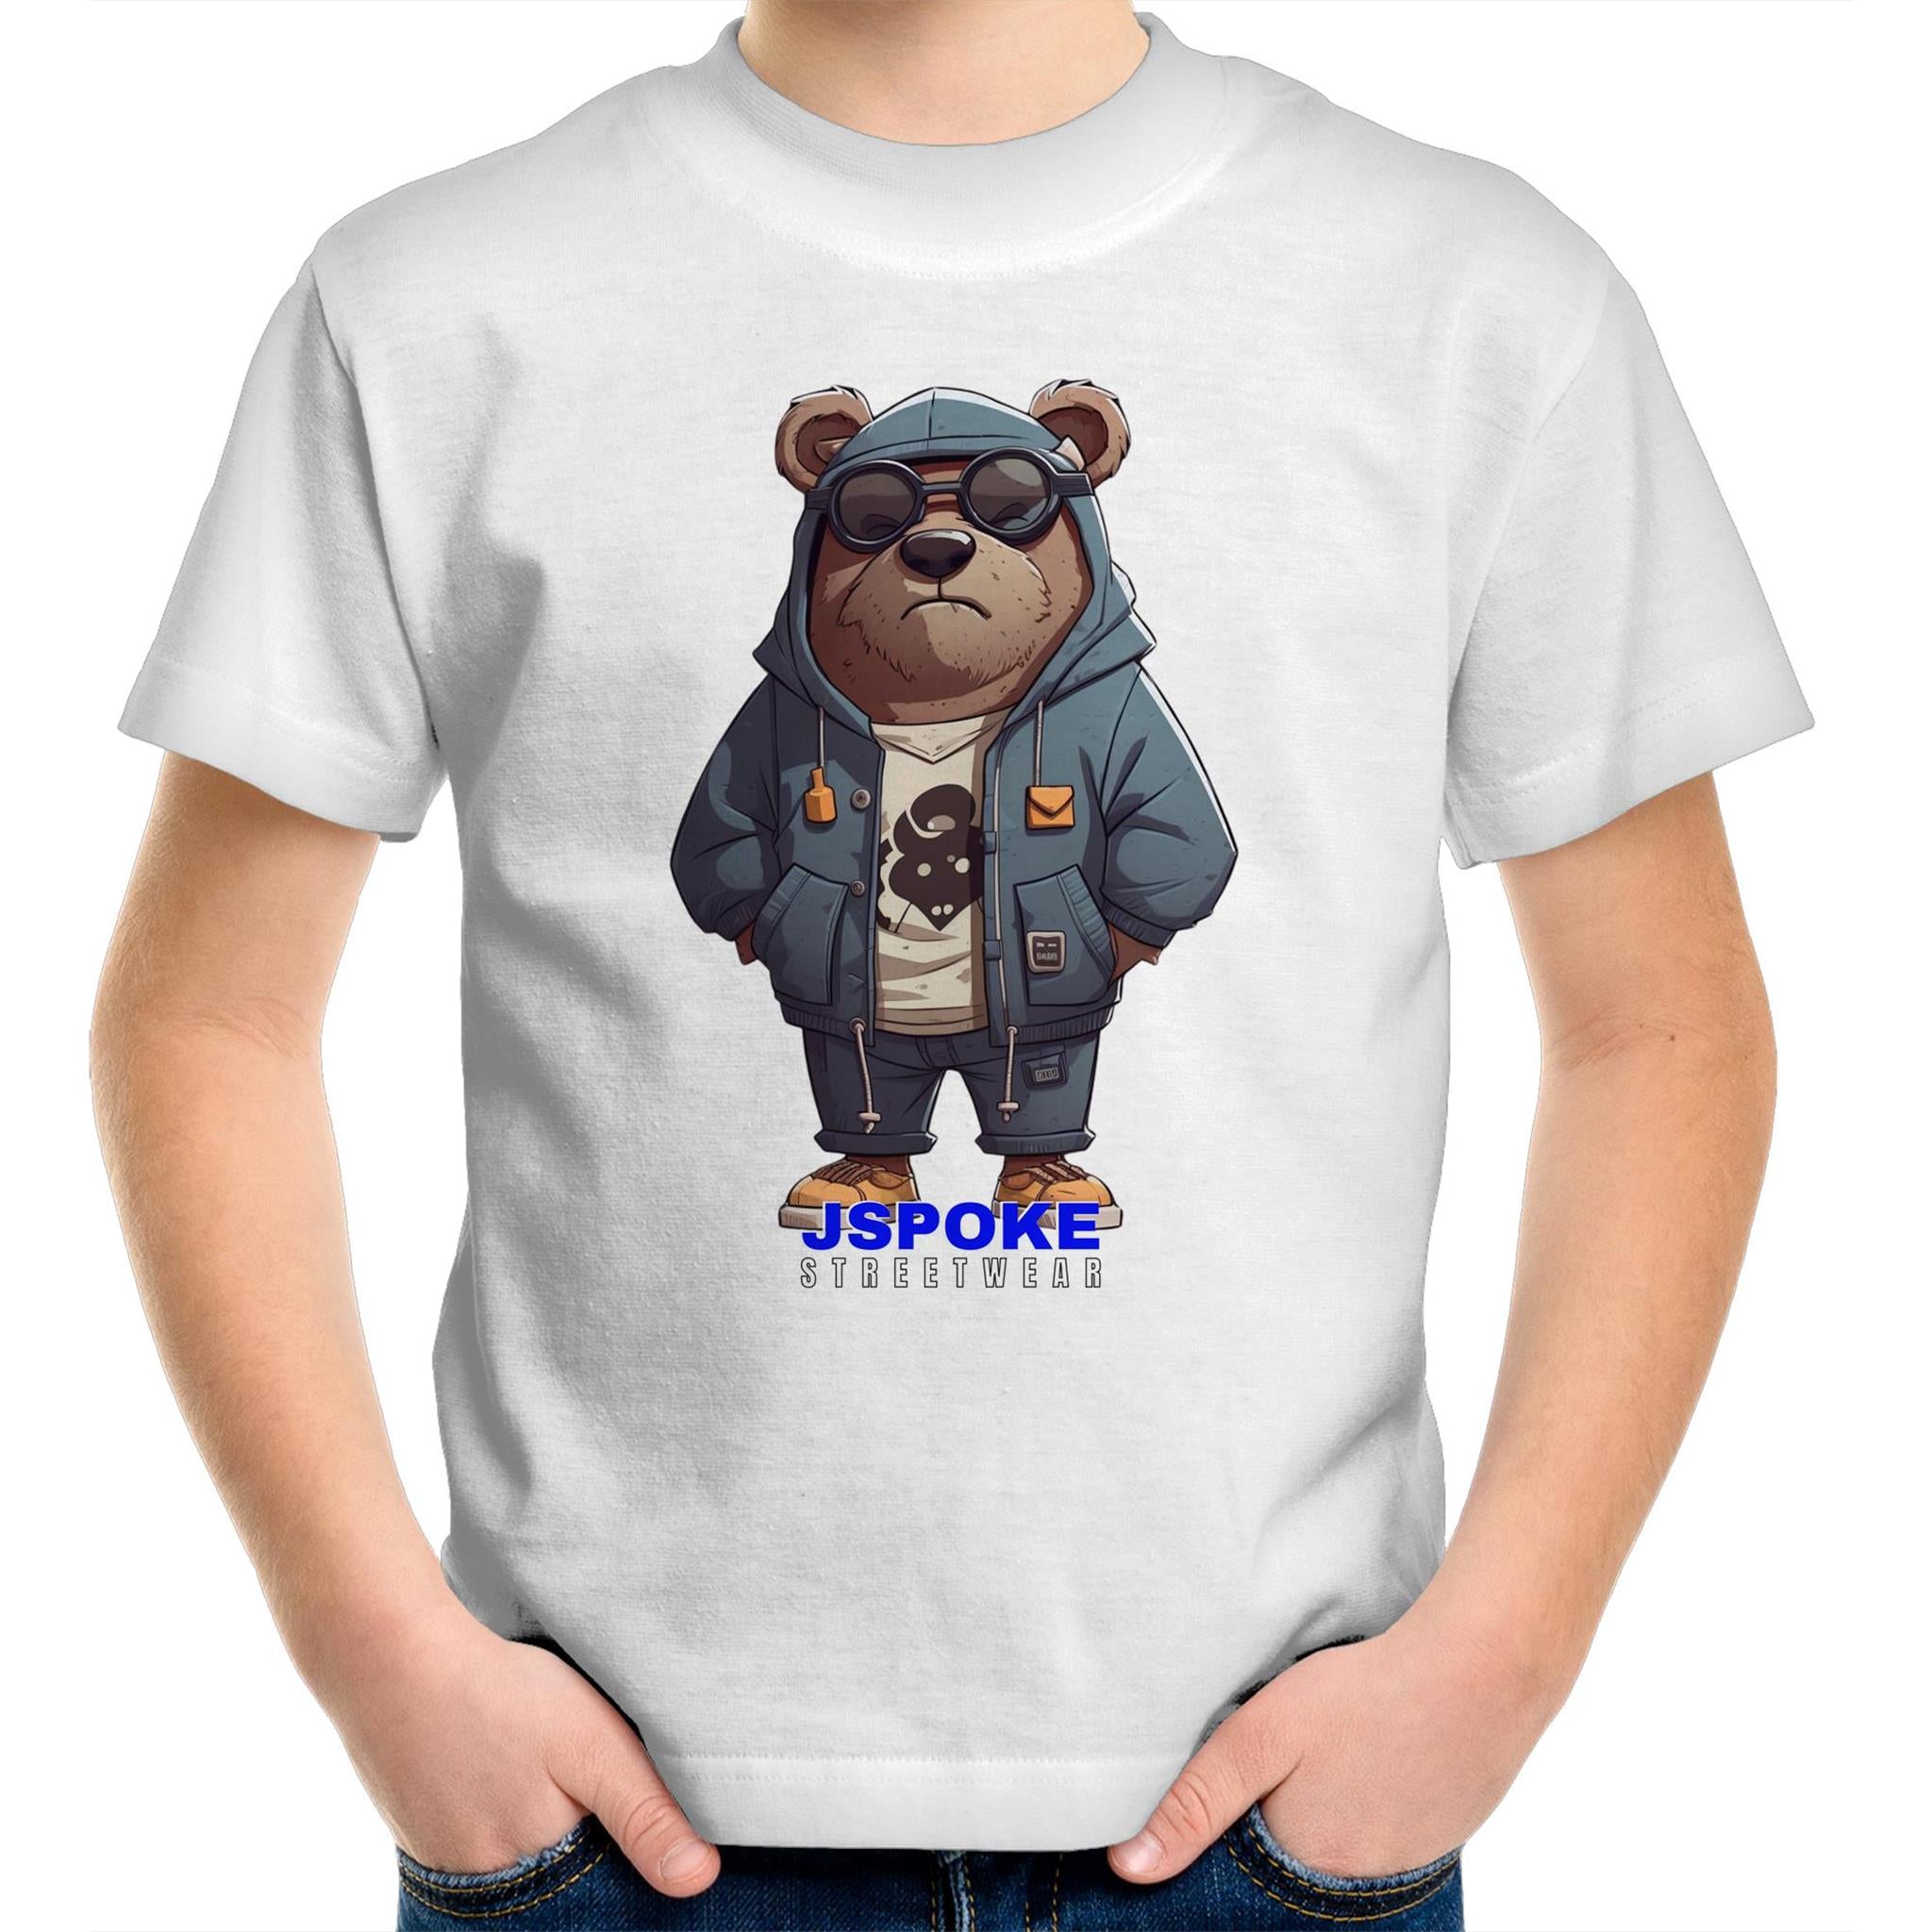 KIDS T-SHIRT, STREETWEAR, JSPOKE TEDDY BEAR